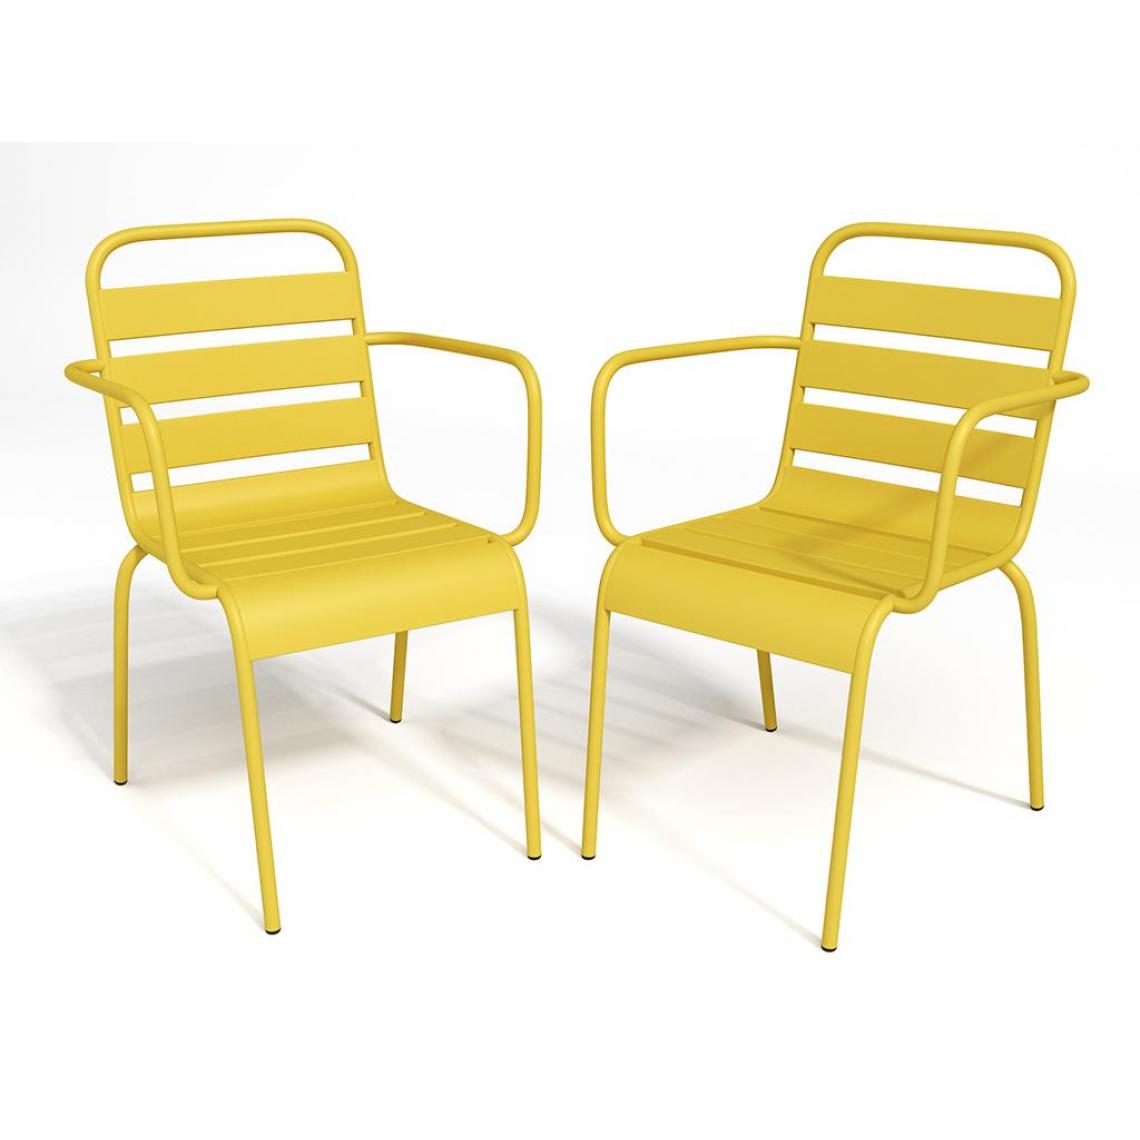 Vente-Unique - Chaise de jardin MIRMANDE - Chaises de jardin